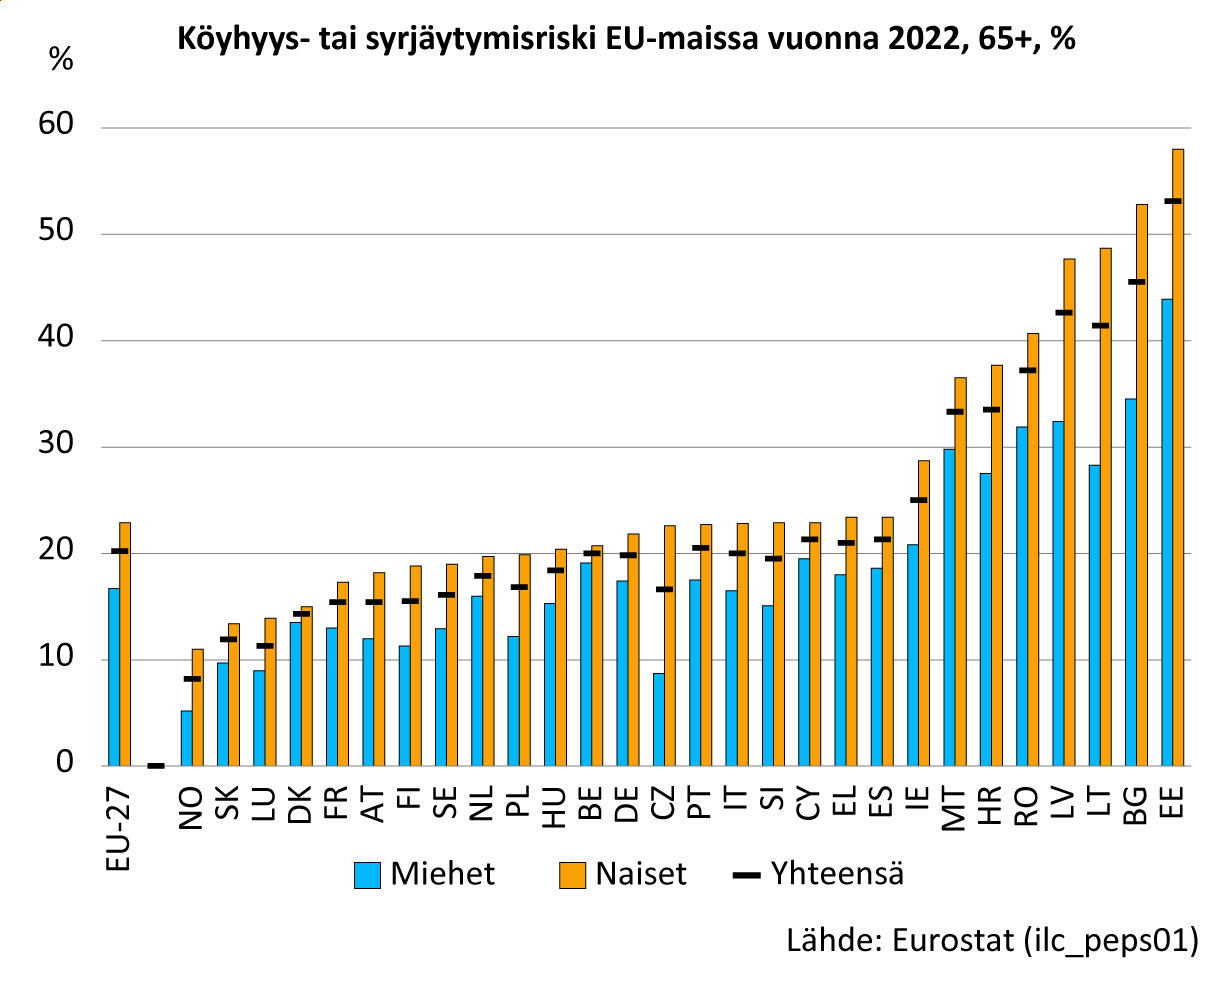 Kuva esittää pylväskaaviota otsikolla “Köyhyys- tai syrjäytymisriski EU-maissa vuonna 2022, 65+, %”. Kaavio näyttää yli 65-vuotiaiden henkilöiden köyhyys- tai syrjäytymisriskin prosentteina eri EU-maissa. Suurin riski on Virossa ja pienin riski Norjassa.